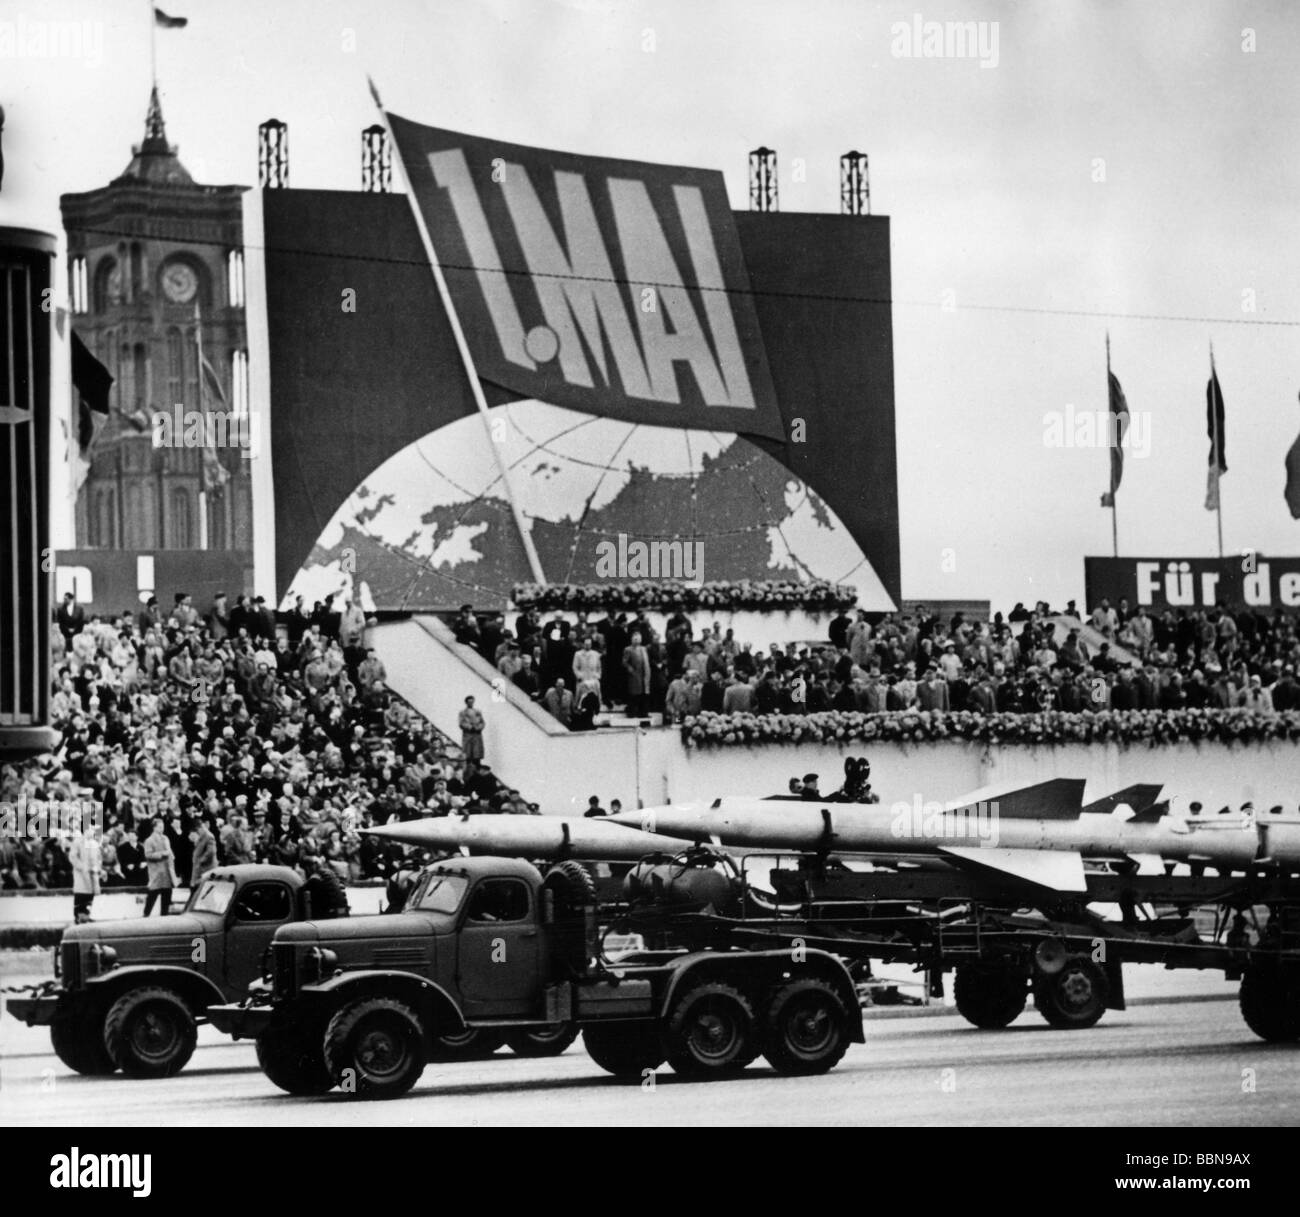 Militar, Alemania del este, Fuerzas aéreas/Defensa Aérea, misiles antiaéreos S-75 'dvina', desfile del 1 de mayo, Berlín del este, 1.5.1962, , Foto de stock